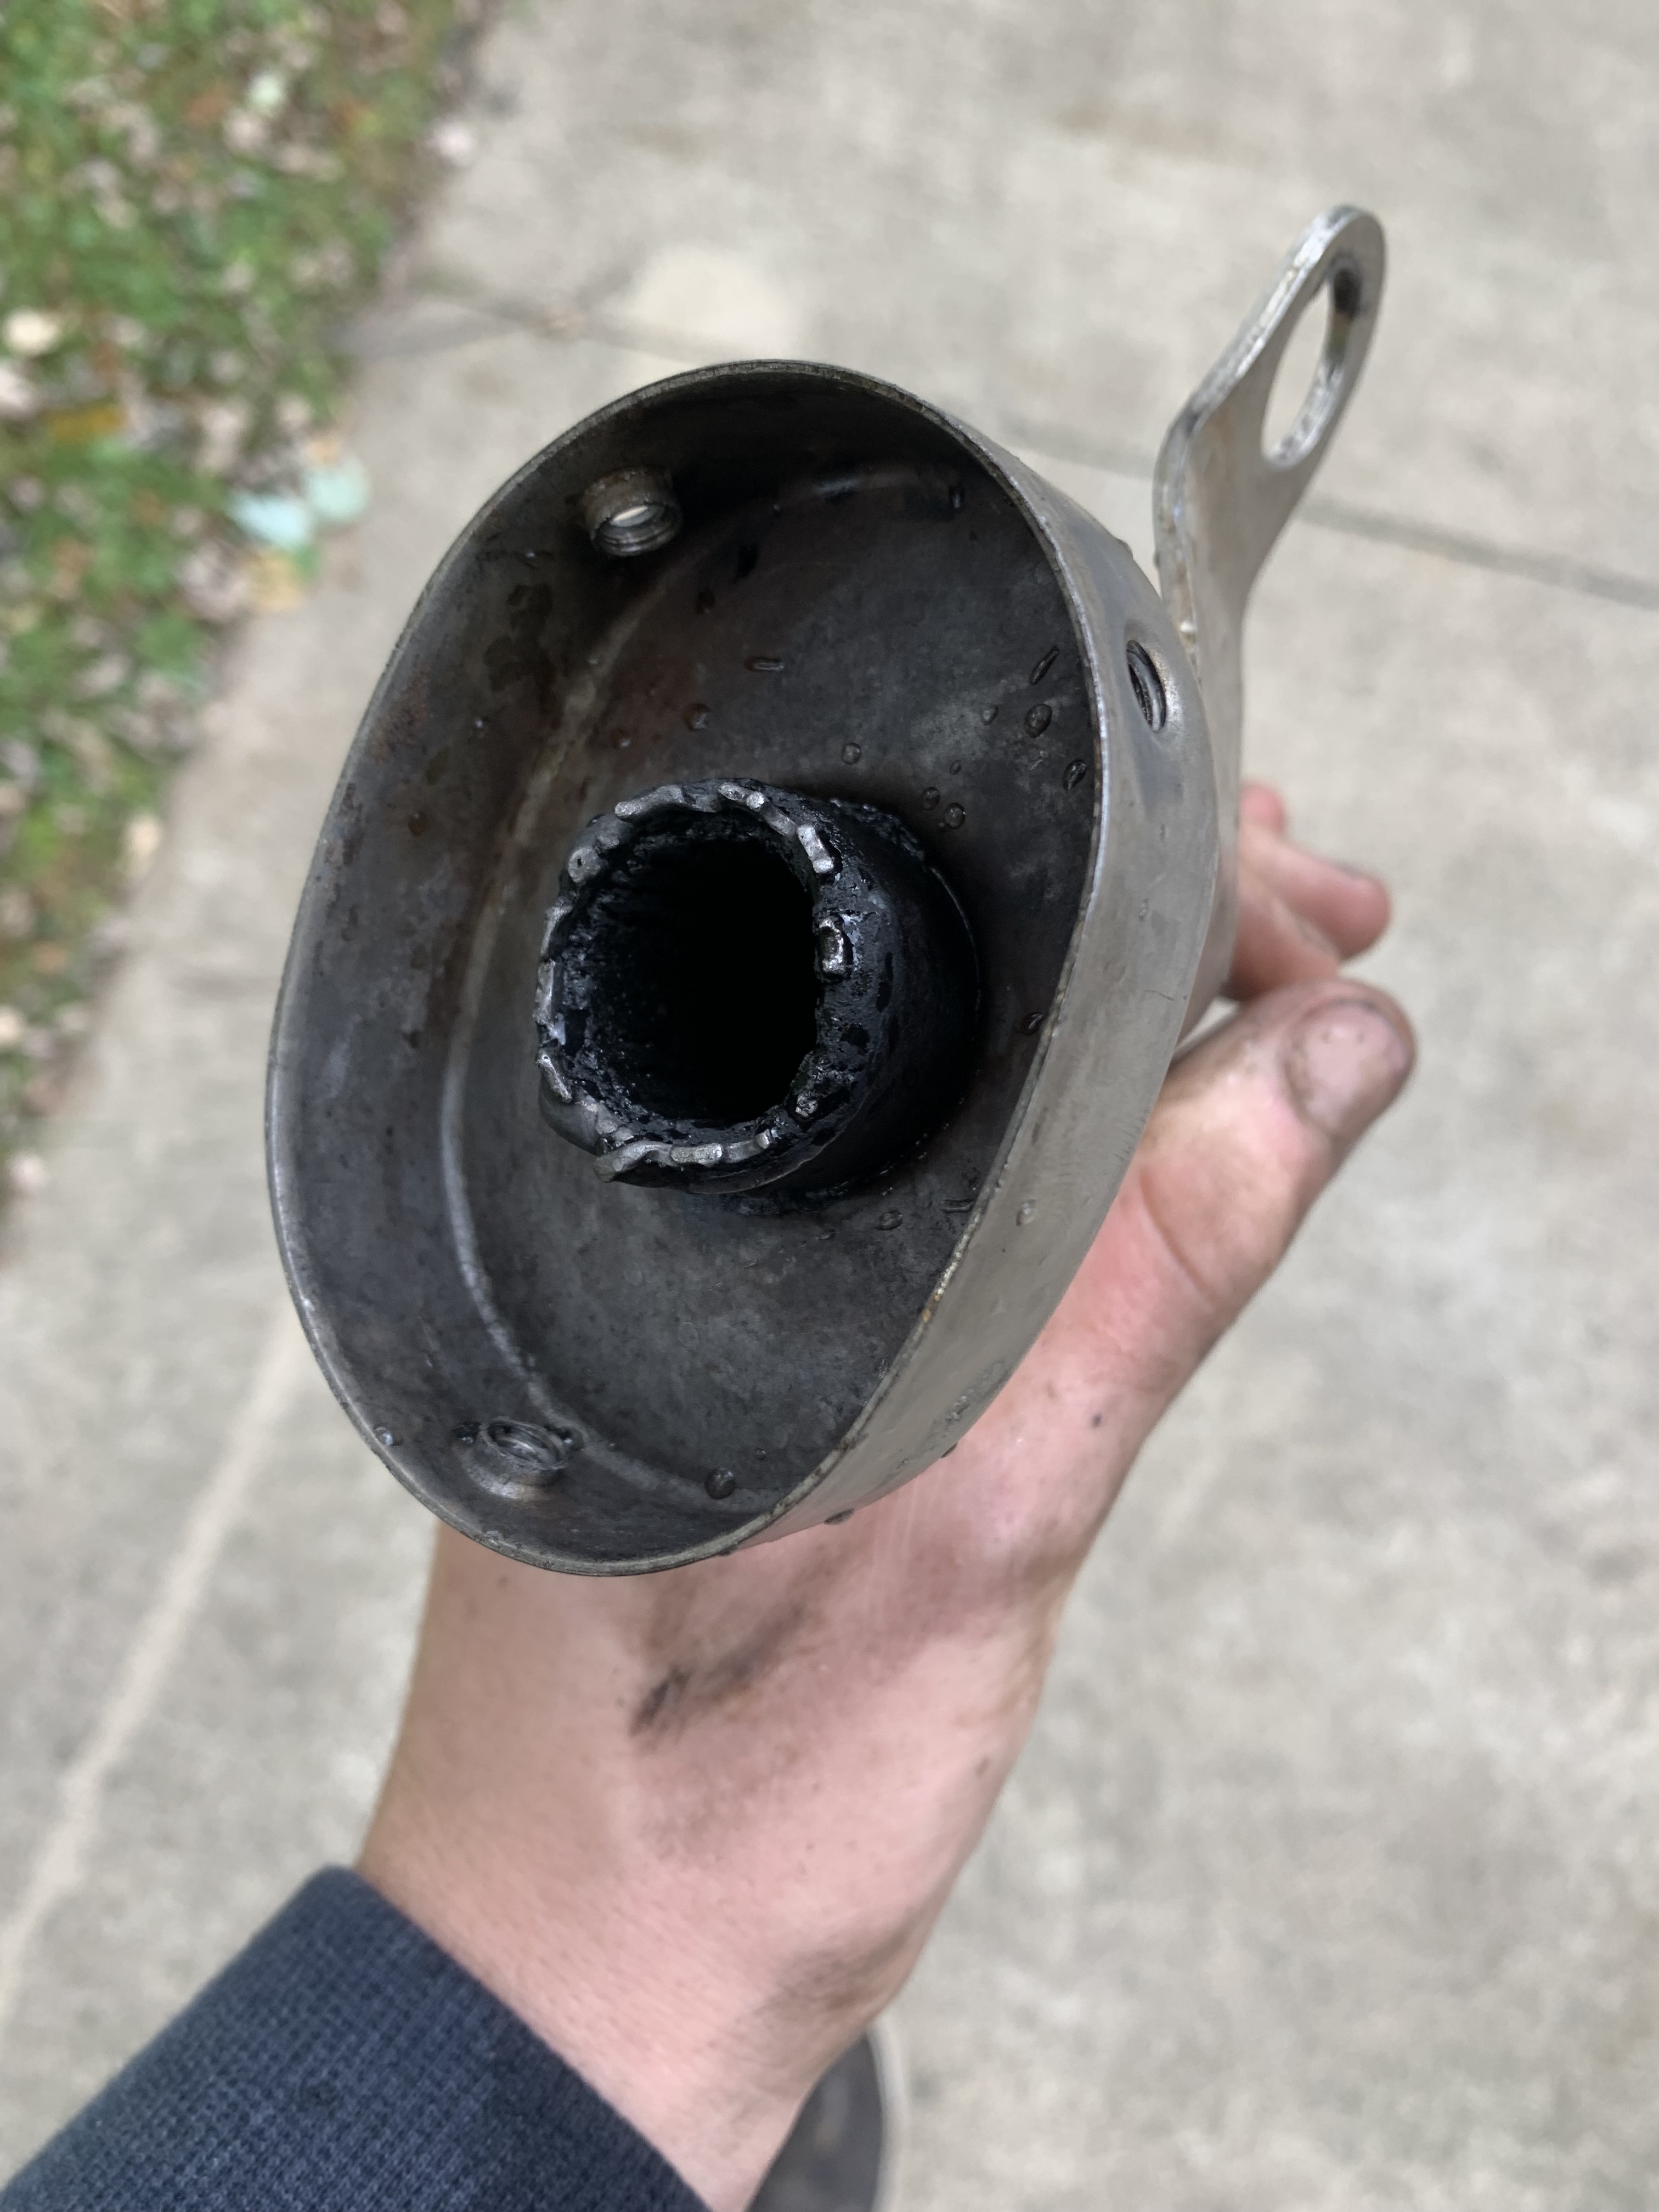 Exhaust core broken off